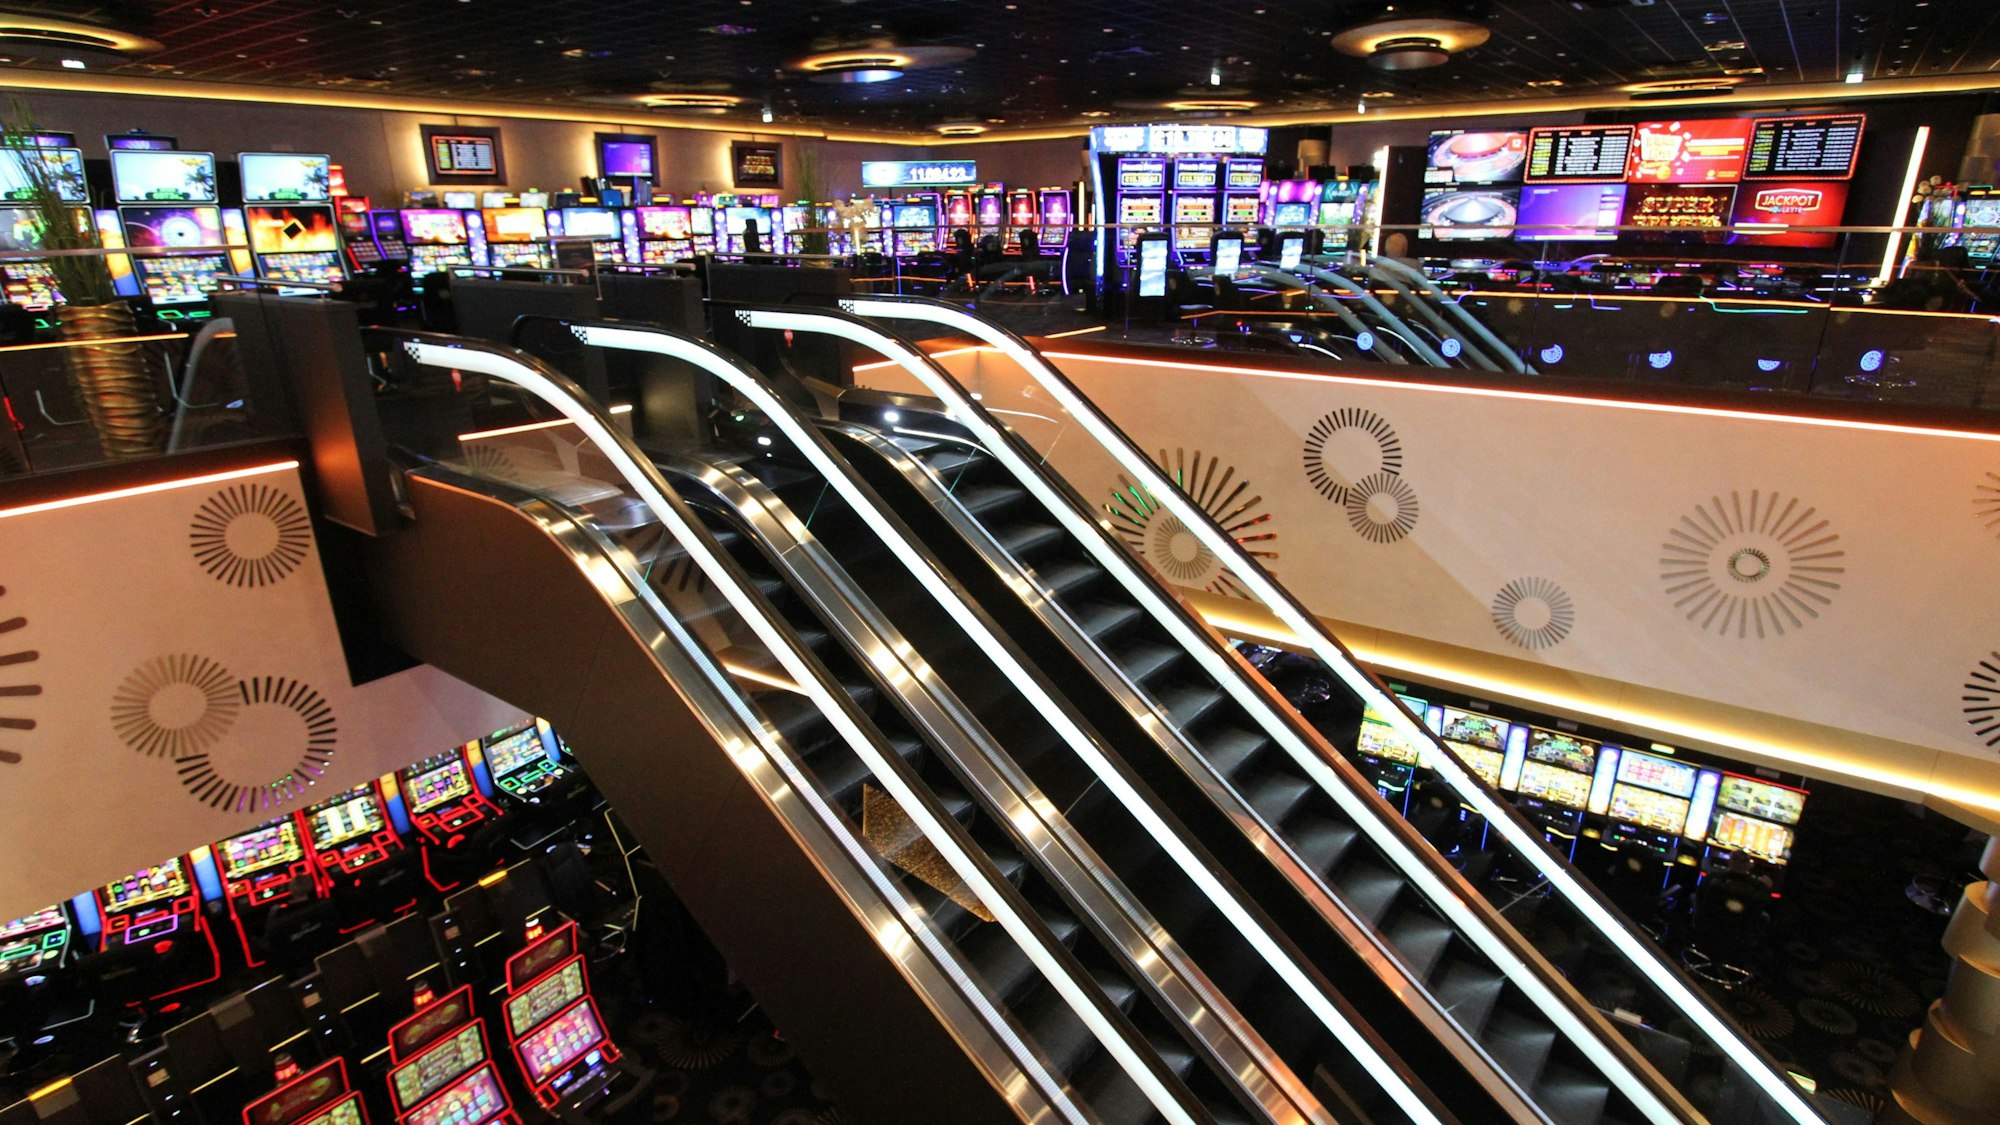 Blick in eine Spielbank mit vielen Automaten und zwei Rolltreppen